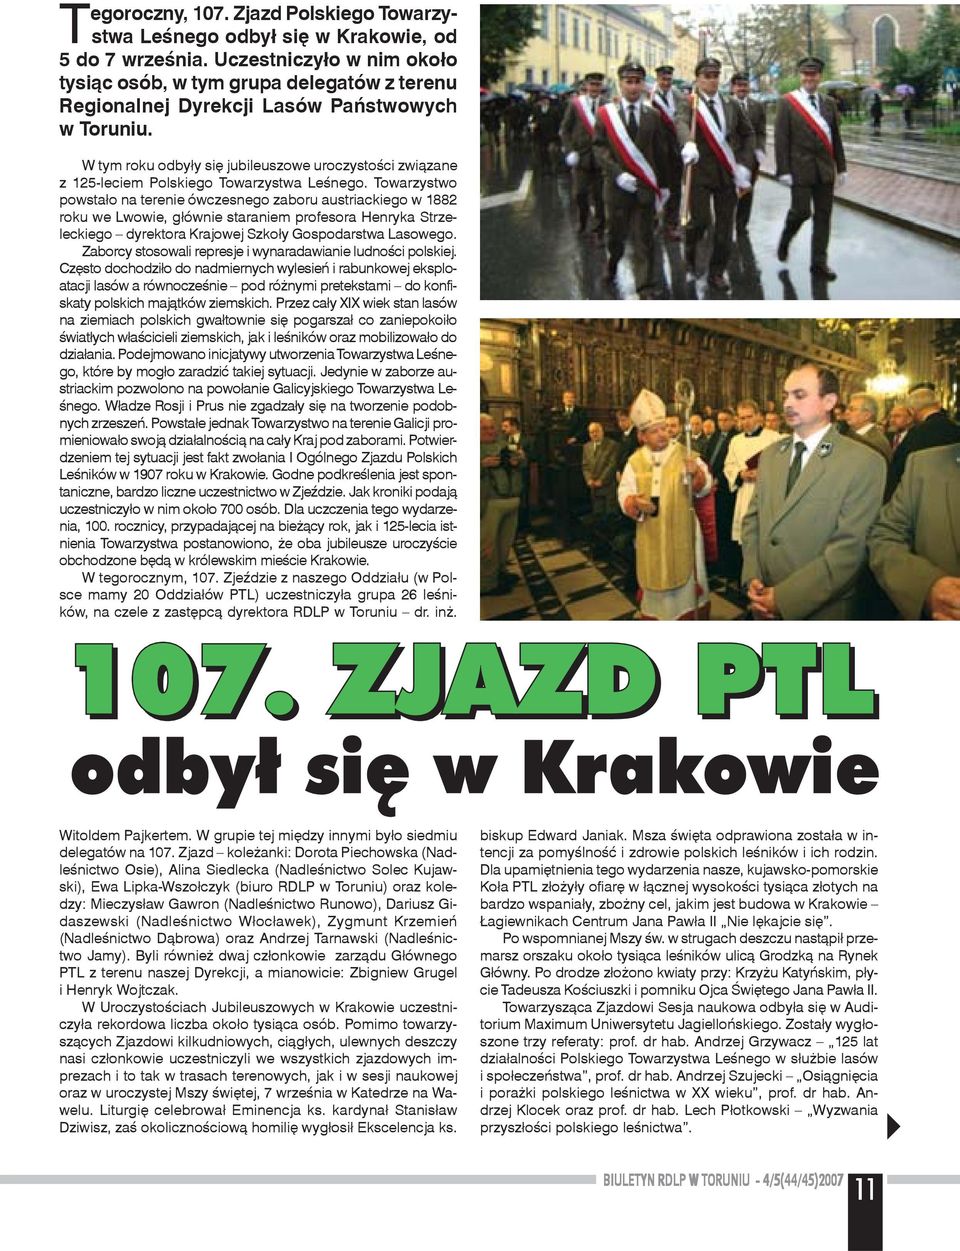 W tym roku odby³y siê jubileuszowe uroczystoœci zwi¹zane z 125-leciem Polskiego Towarzystwa Leœnego.